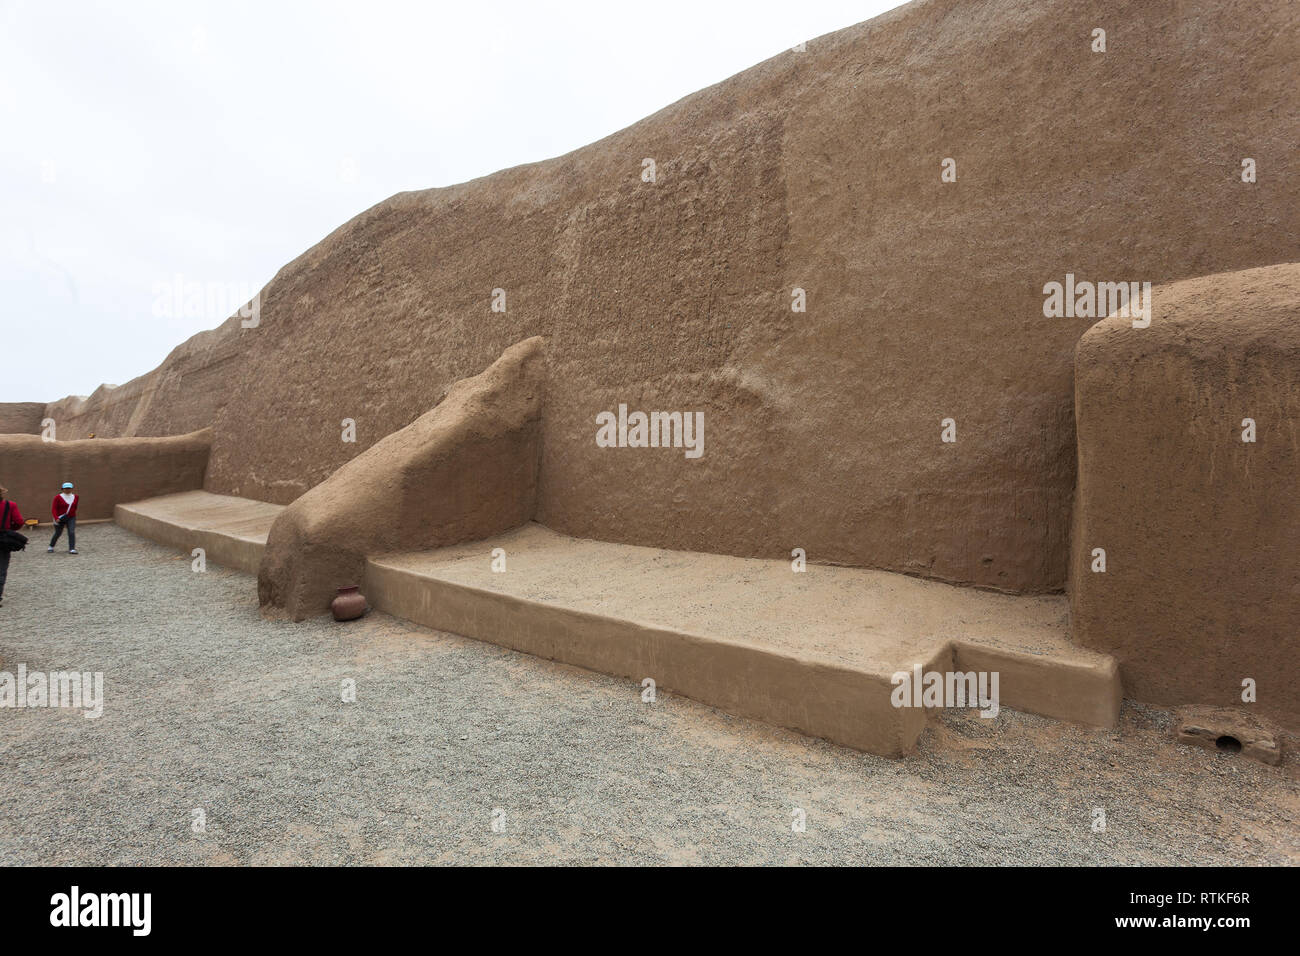 Chan Chan, Trujillo, Perú, julio de 2018: inmensos muros de la ciudad de Chan Chan, capital del reino Chimú, visitados por turistas que caminan por ella Foto de stock